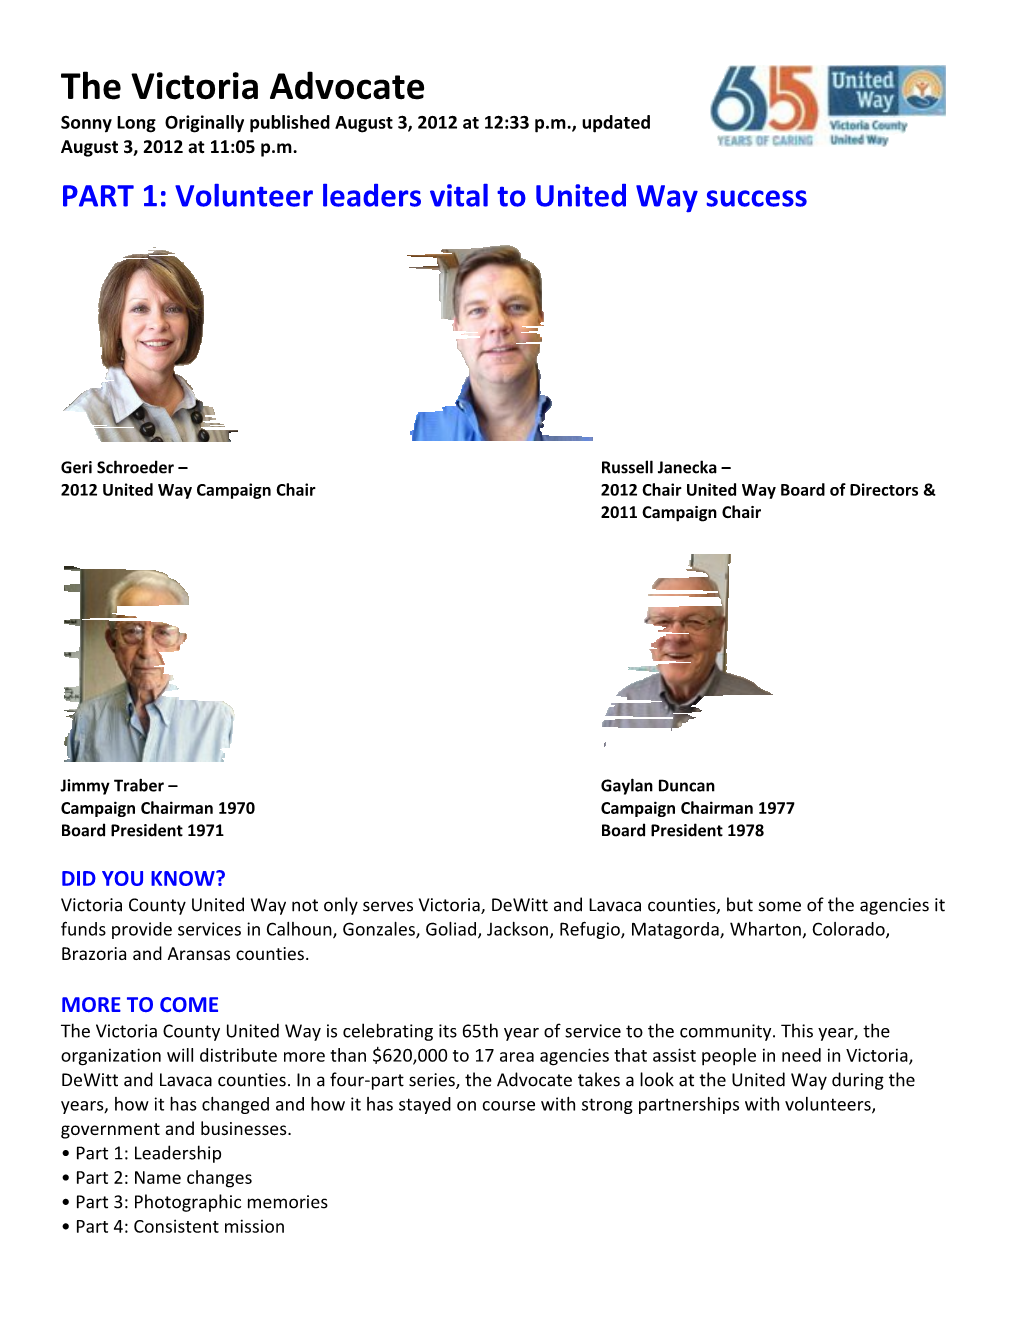 PART 1: Volunteer Leaders Vital to United Way Success